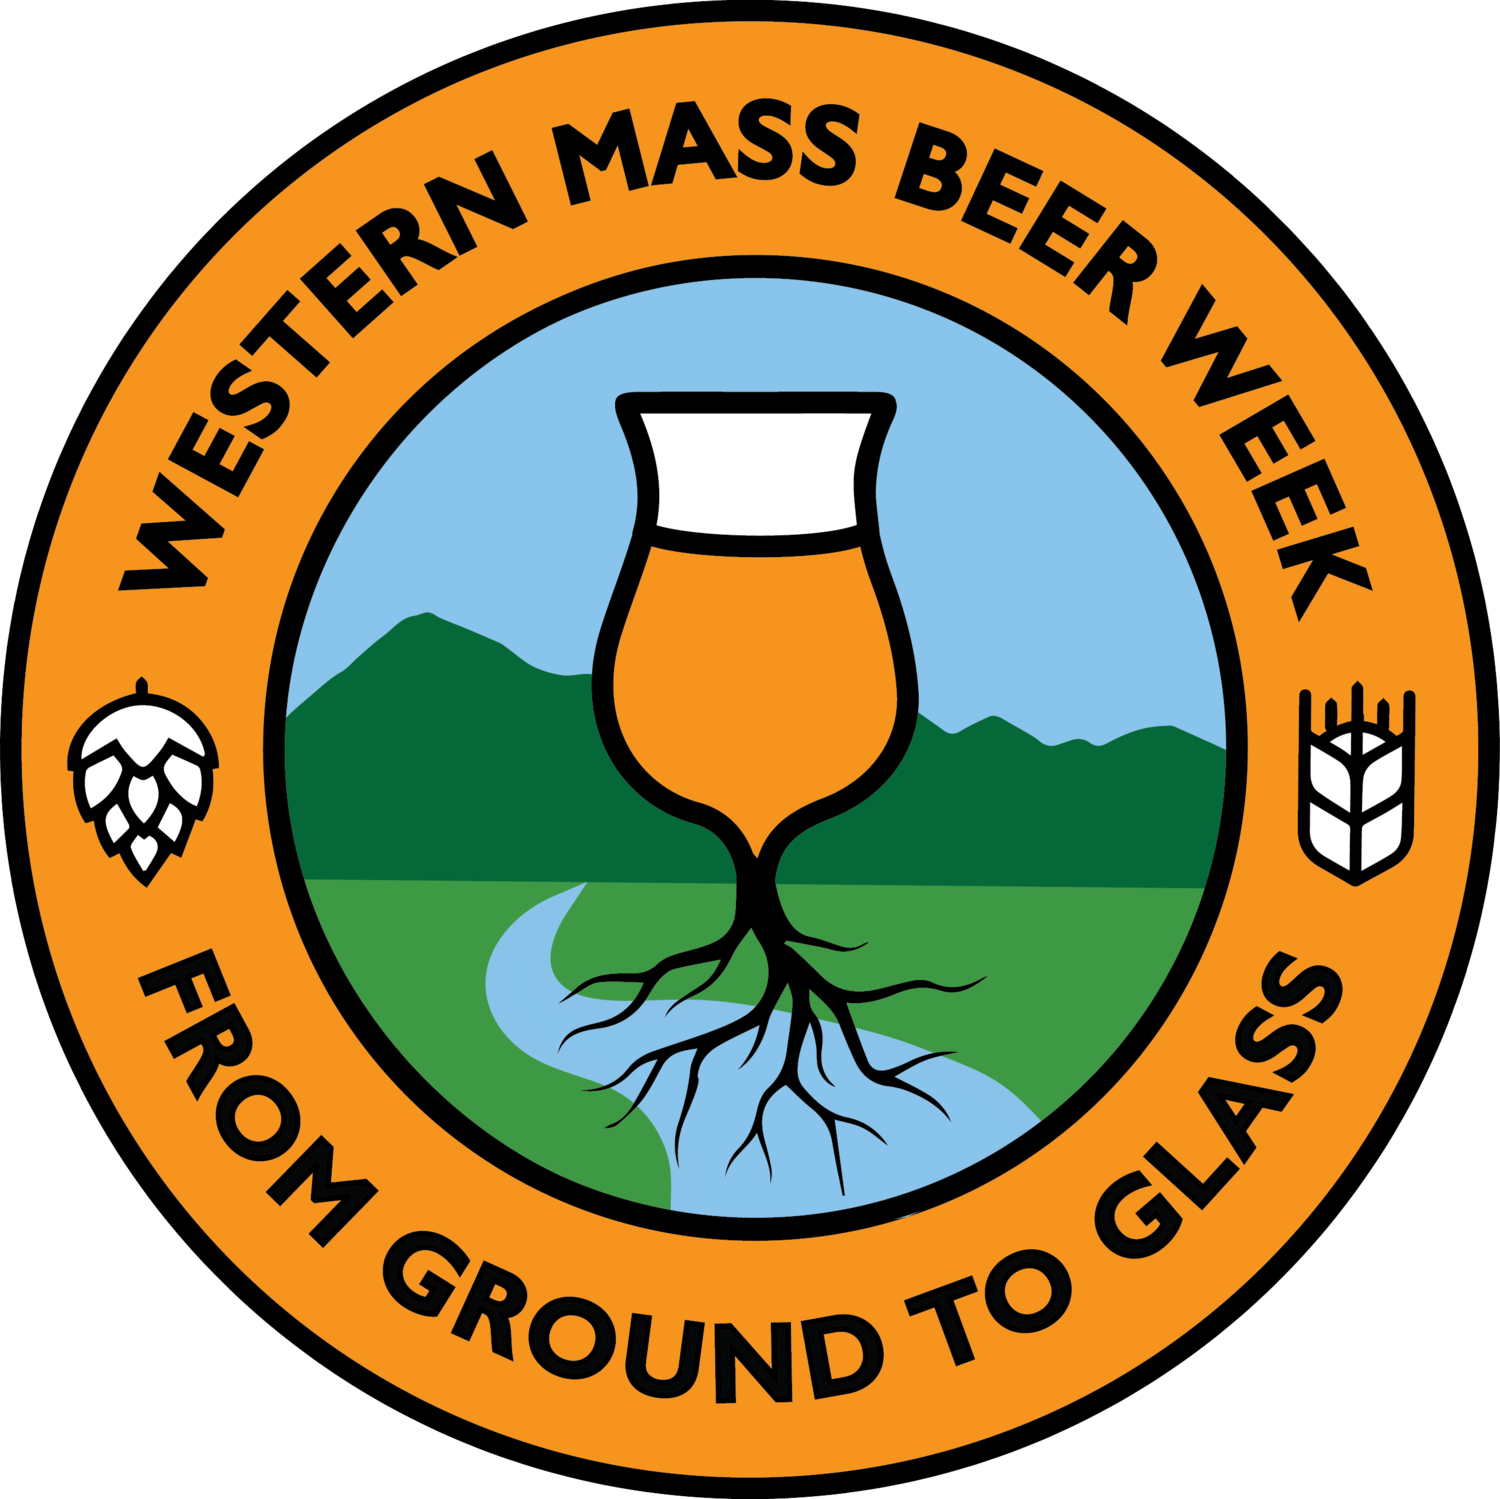 It's Western Mass Beer Week - Western Mass Beer Week (1500x1499)